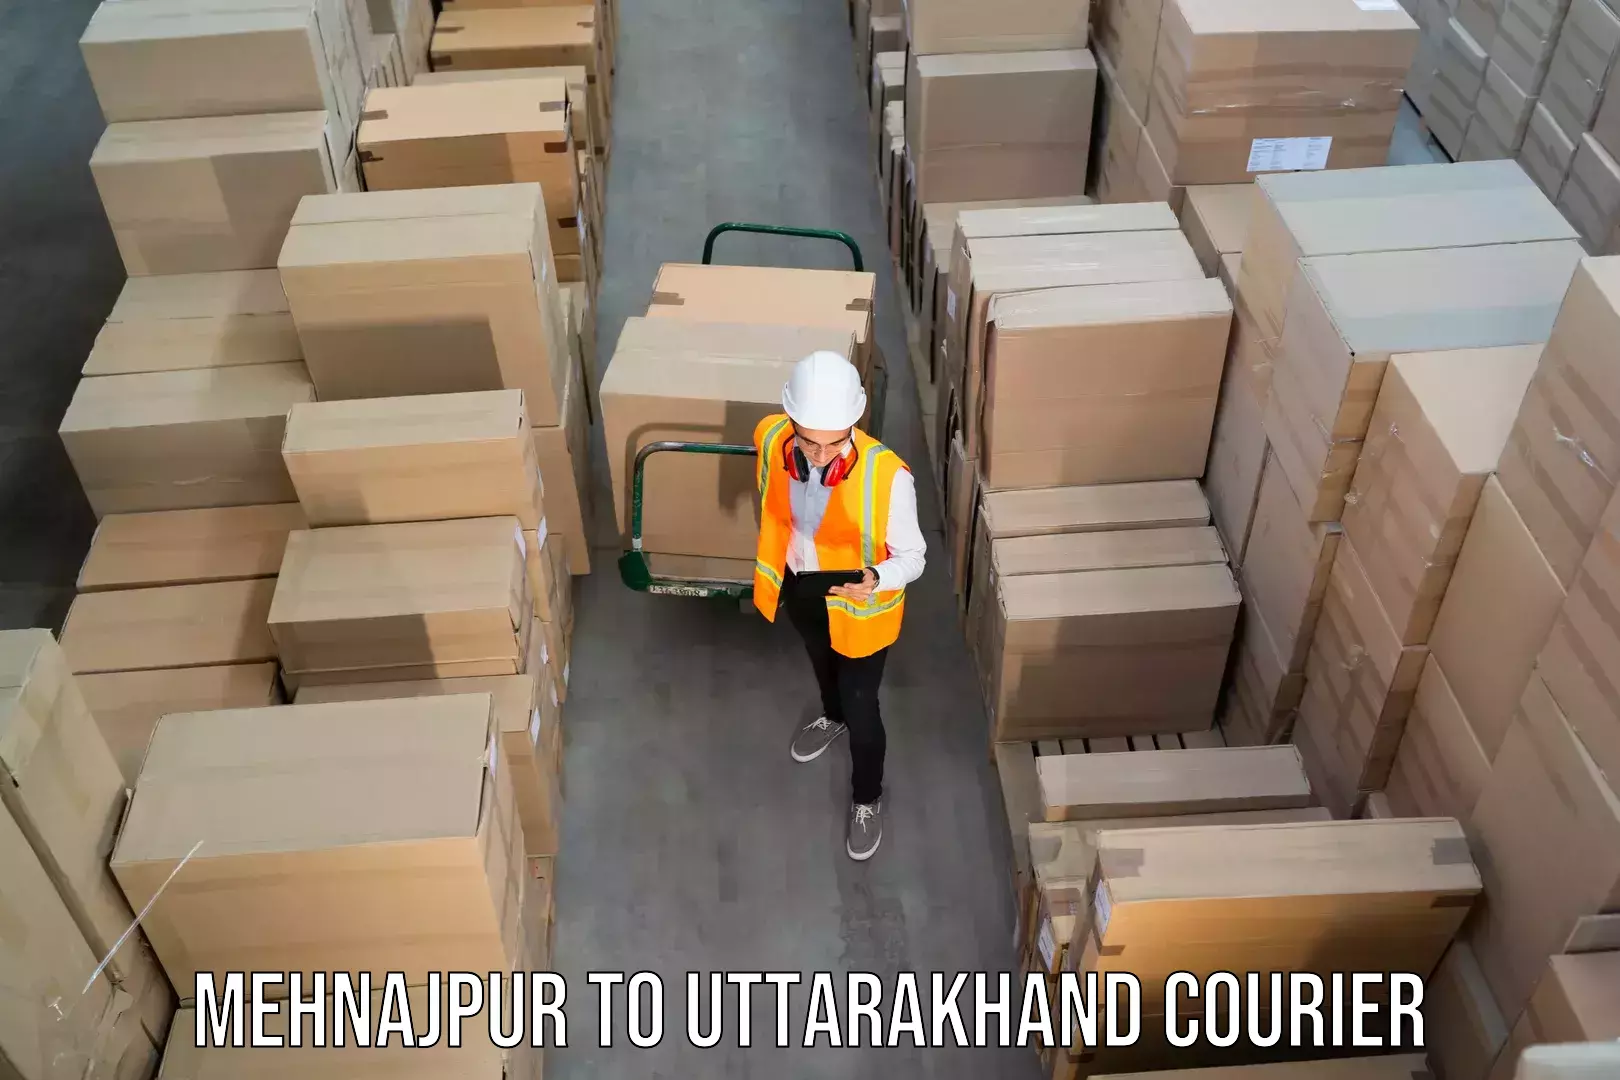 24/7 shipping services Mehnajpur to Dehradun